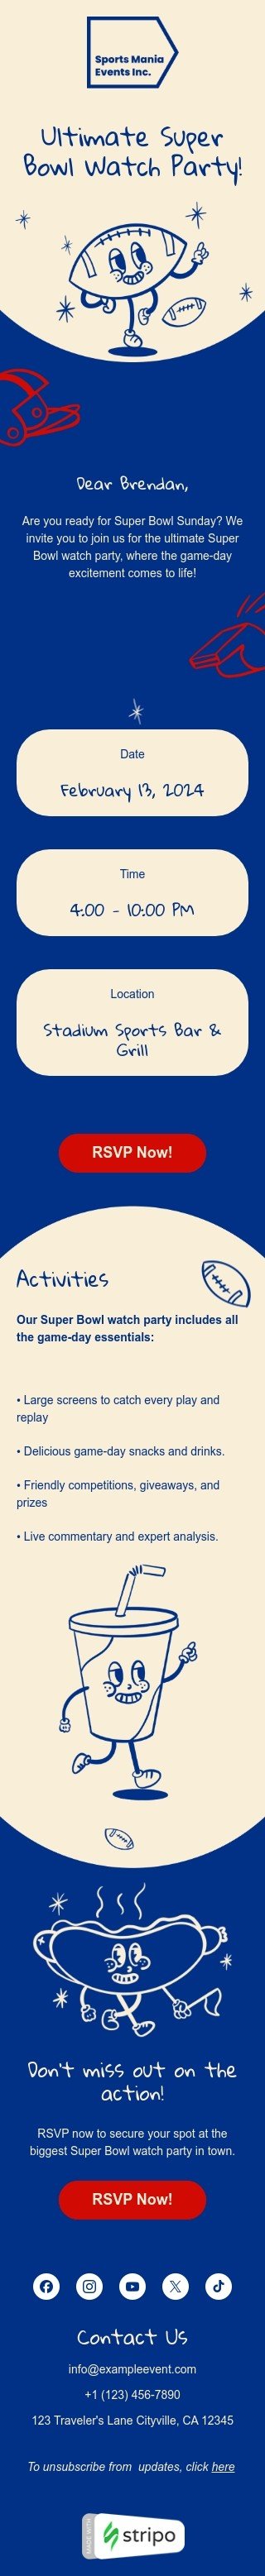 Plantilla de correo electrónico «Fiesta de observación del Super Bowl» de Super Bowl para la industria de hobbies Vista de móvil